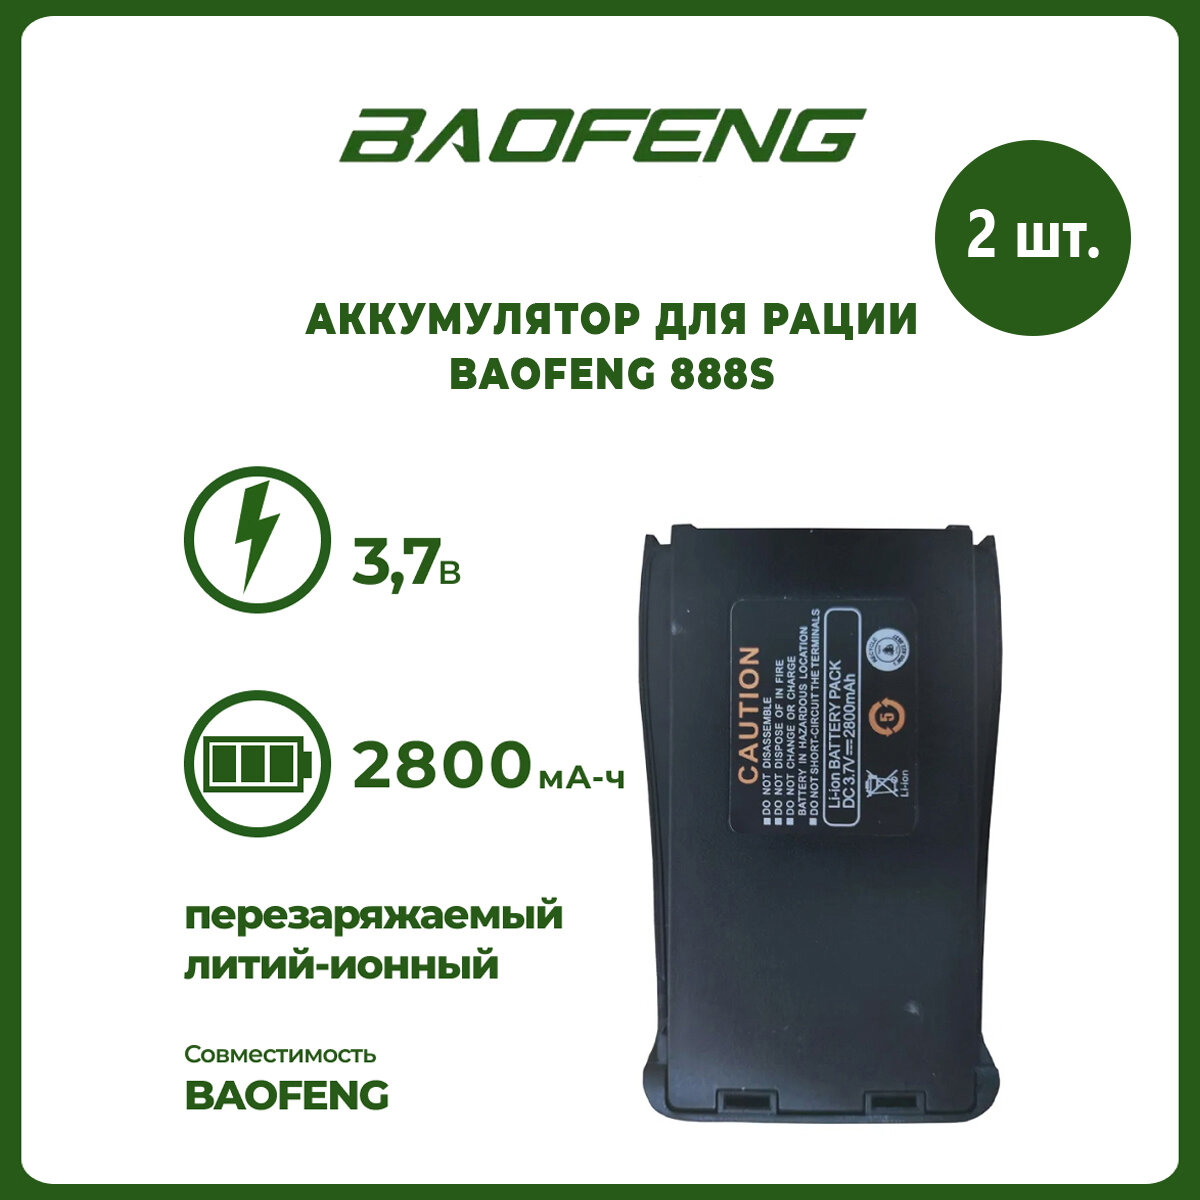 Аккумулятор для рации Baofeng 888S 2800 mAh комплект 2 шт